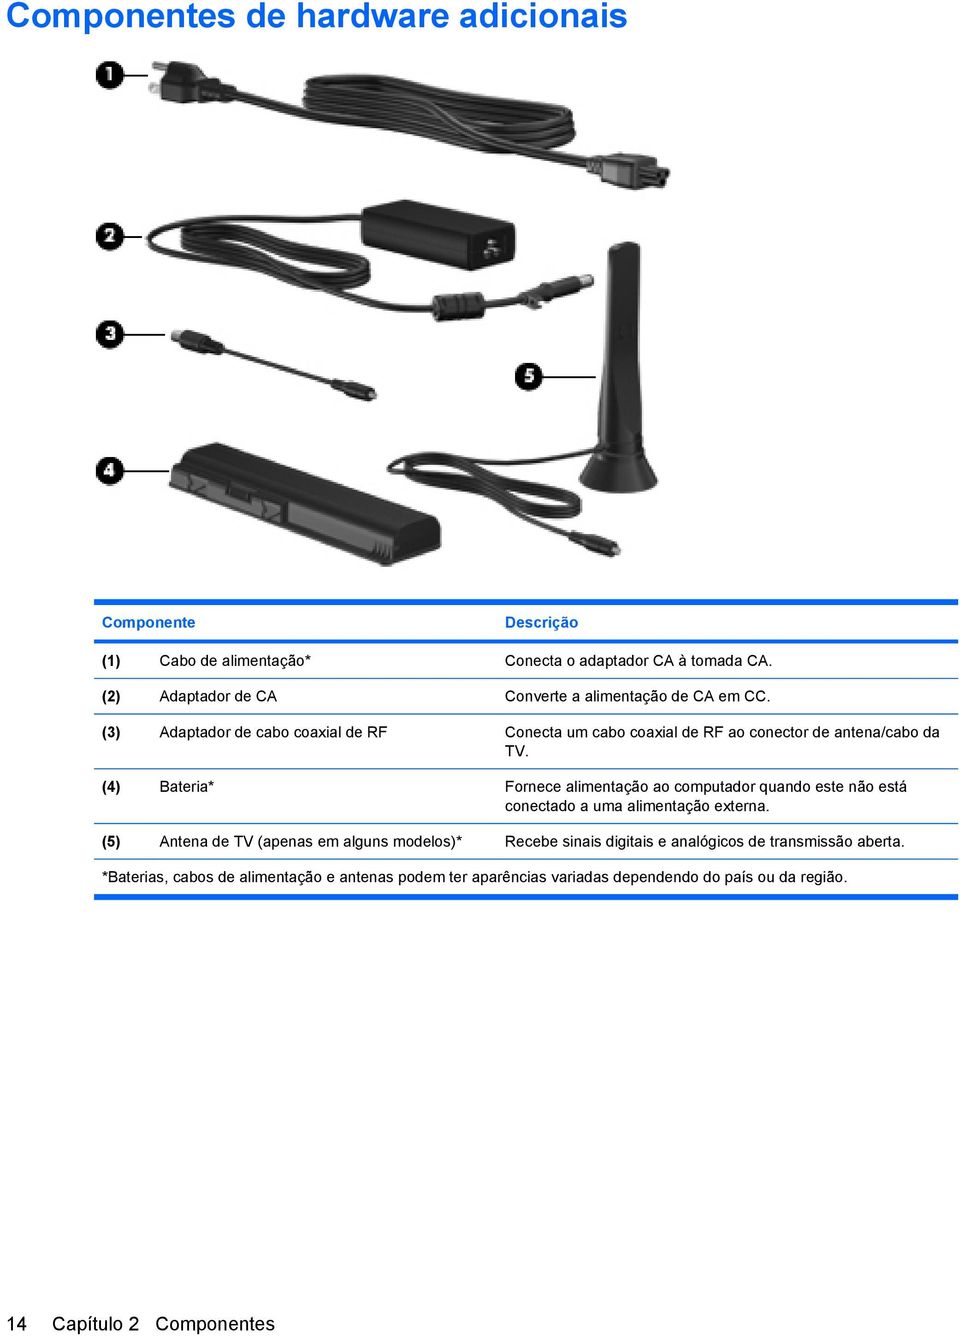 (3) Adaptador de cabo coaxial de RF Conecta um cabo coaxial de RF ao conector de antena/cabo da TV.